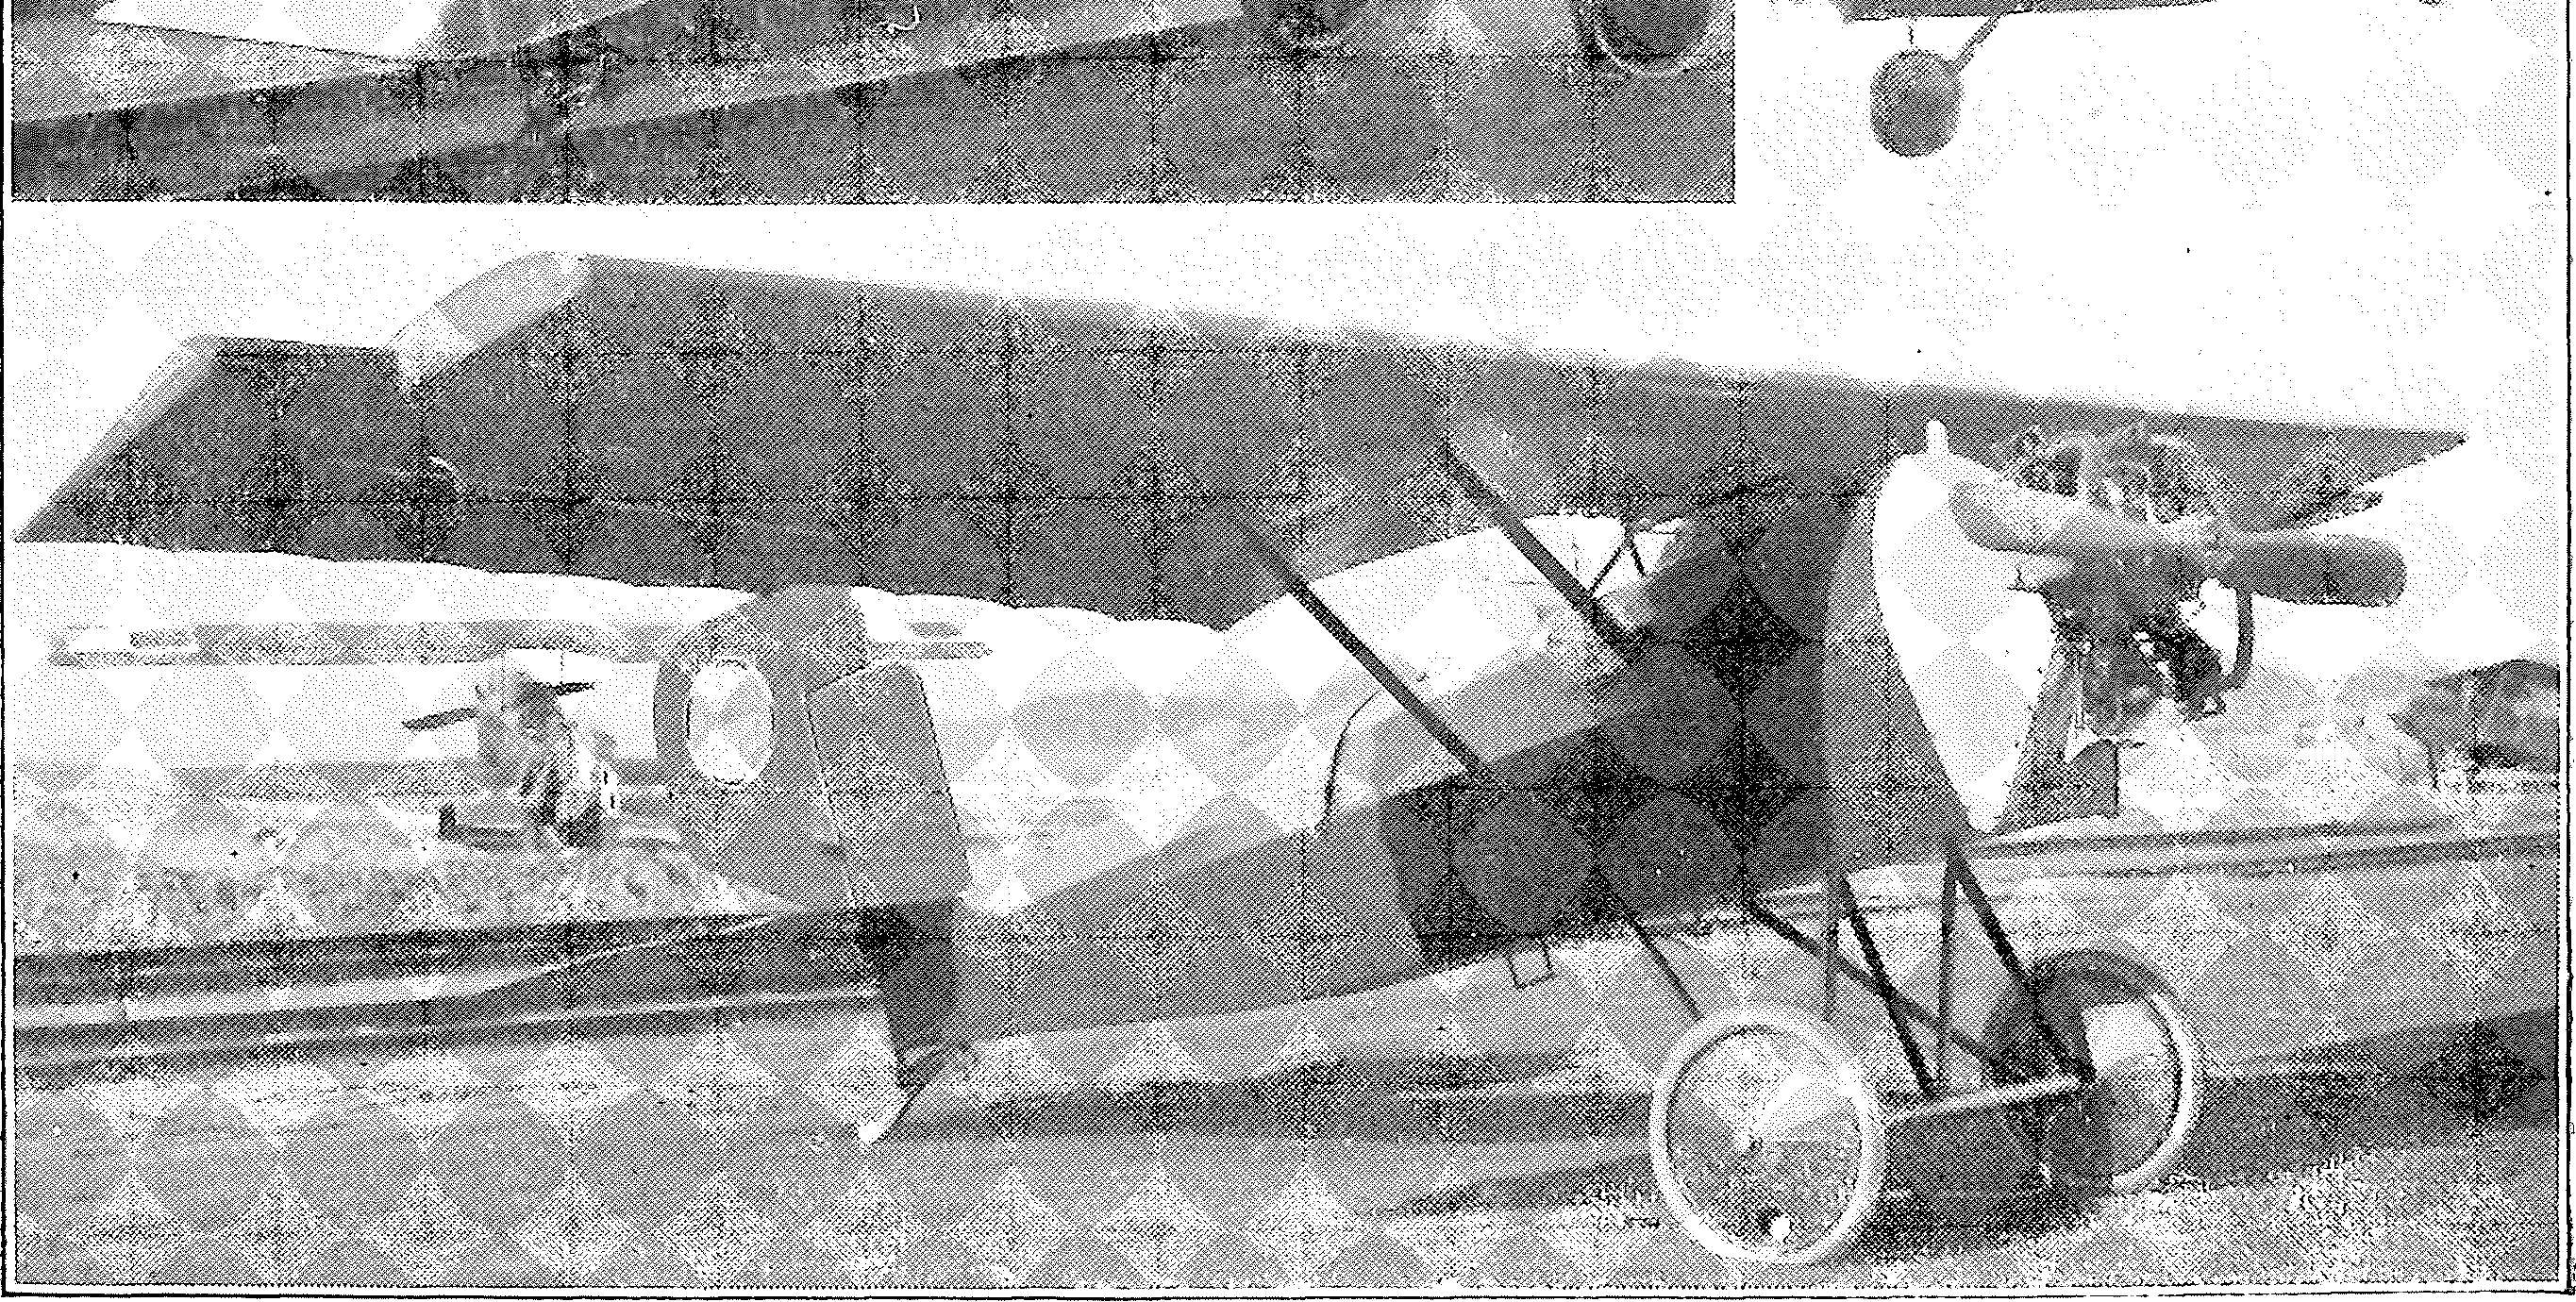 Segelflug, Motorflug und Modellflug sowie Luftfahrt und Luftverkehr im Deutschen Reich (Weimarer Republik) im Jahre 1927